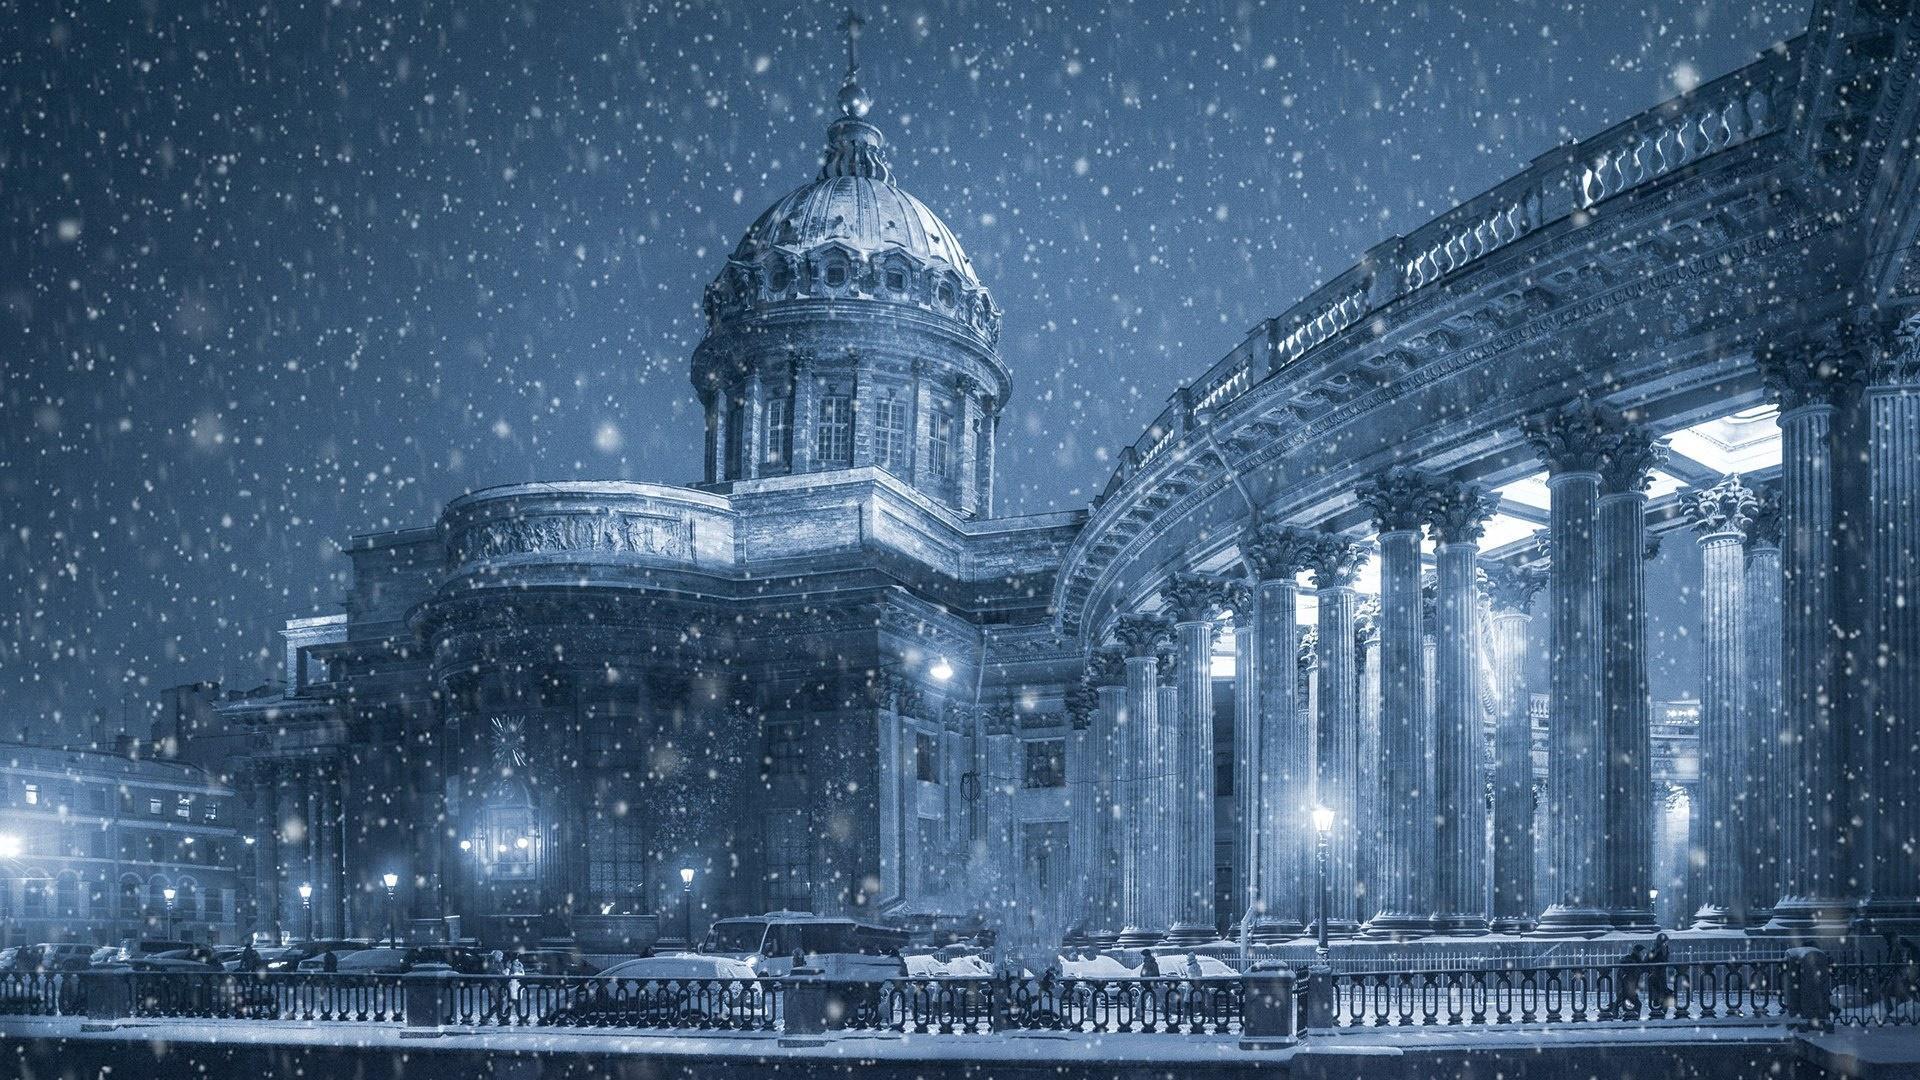 Saint Petersburg Wallpaper , Download 4K Wallpaper For Free